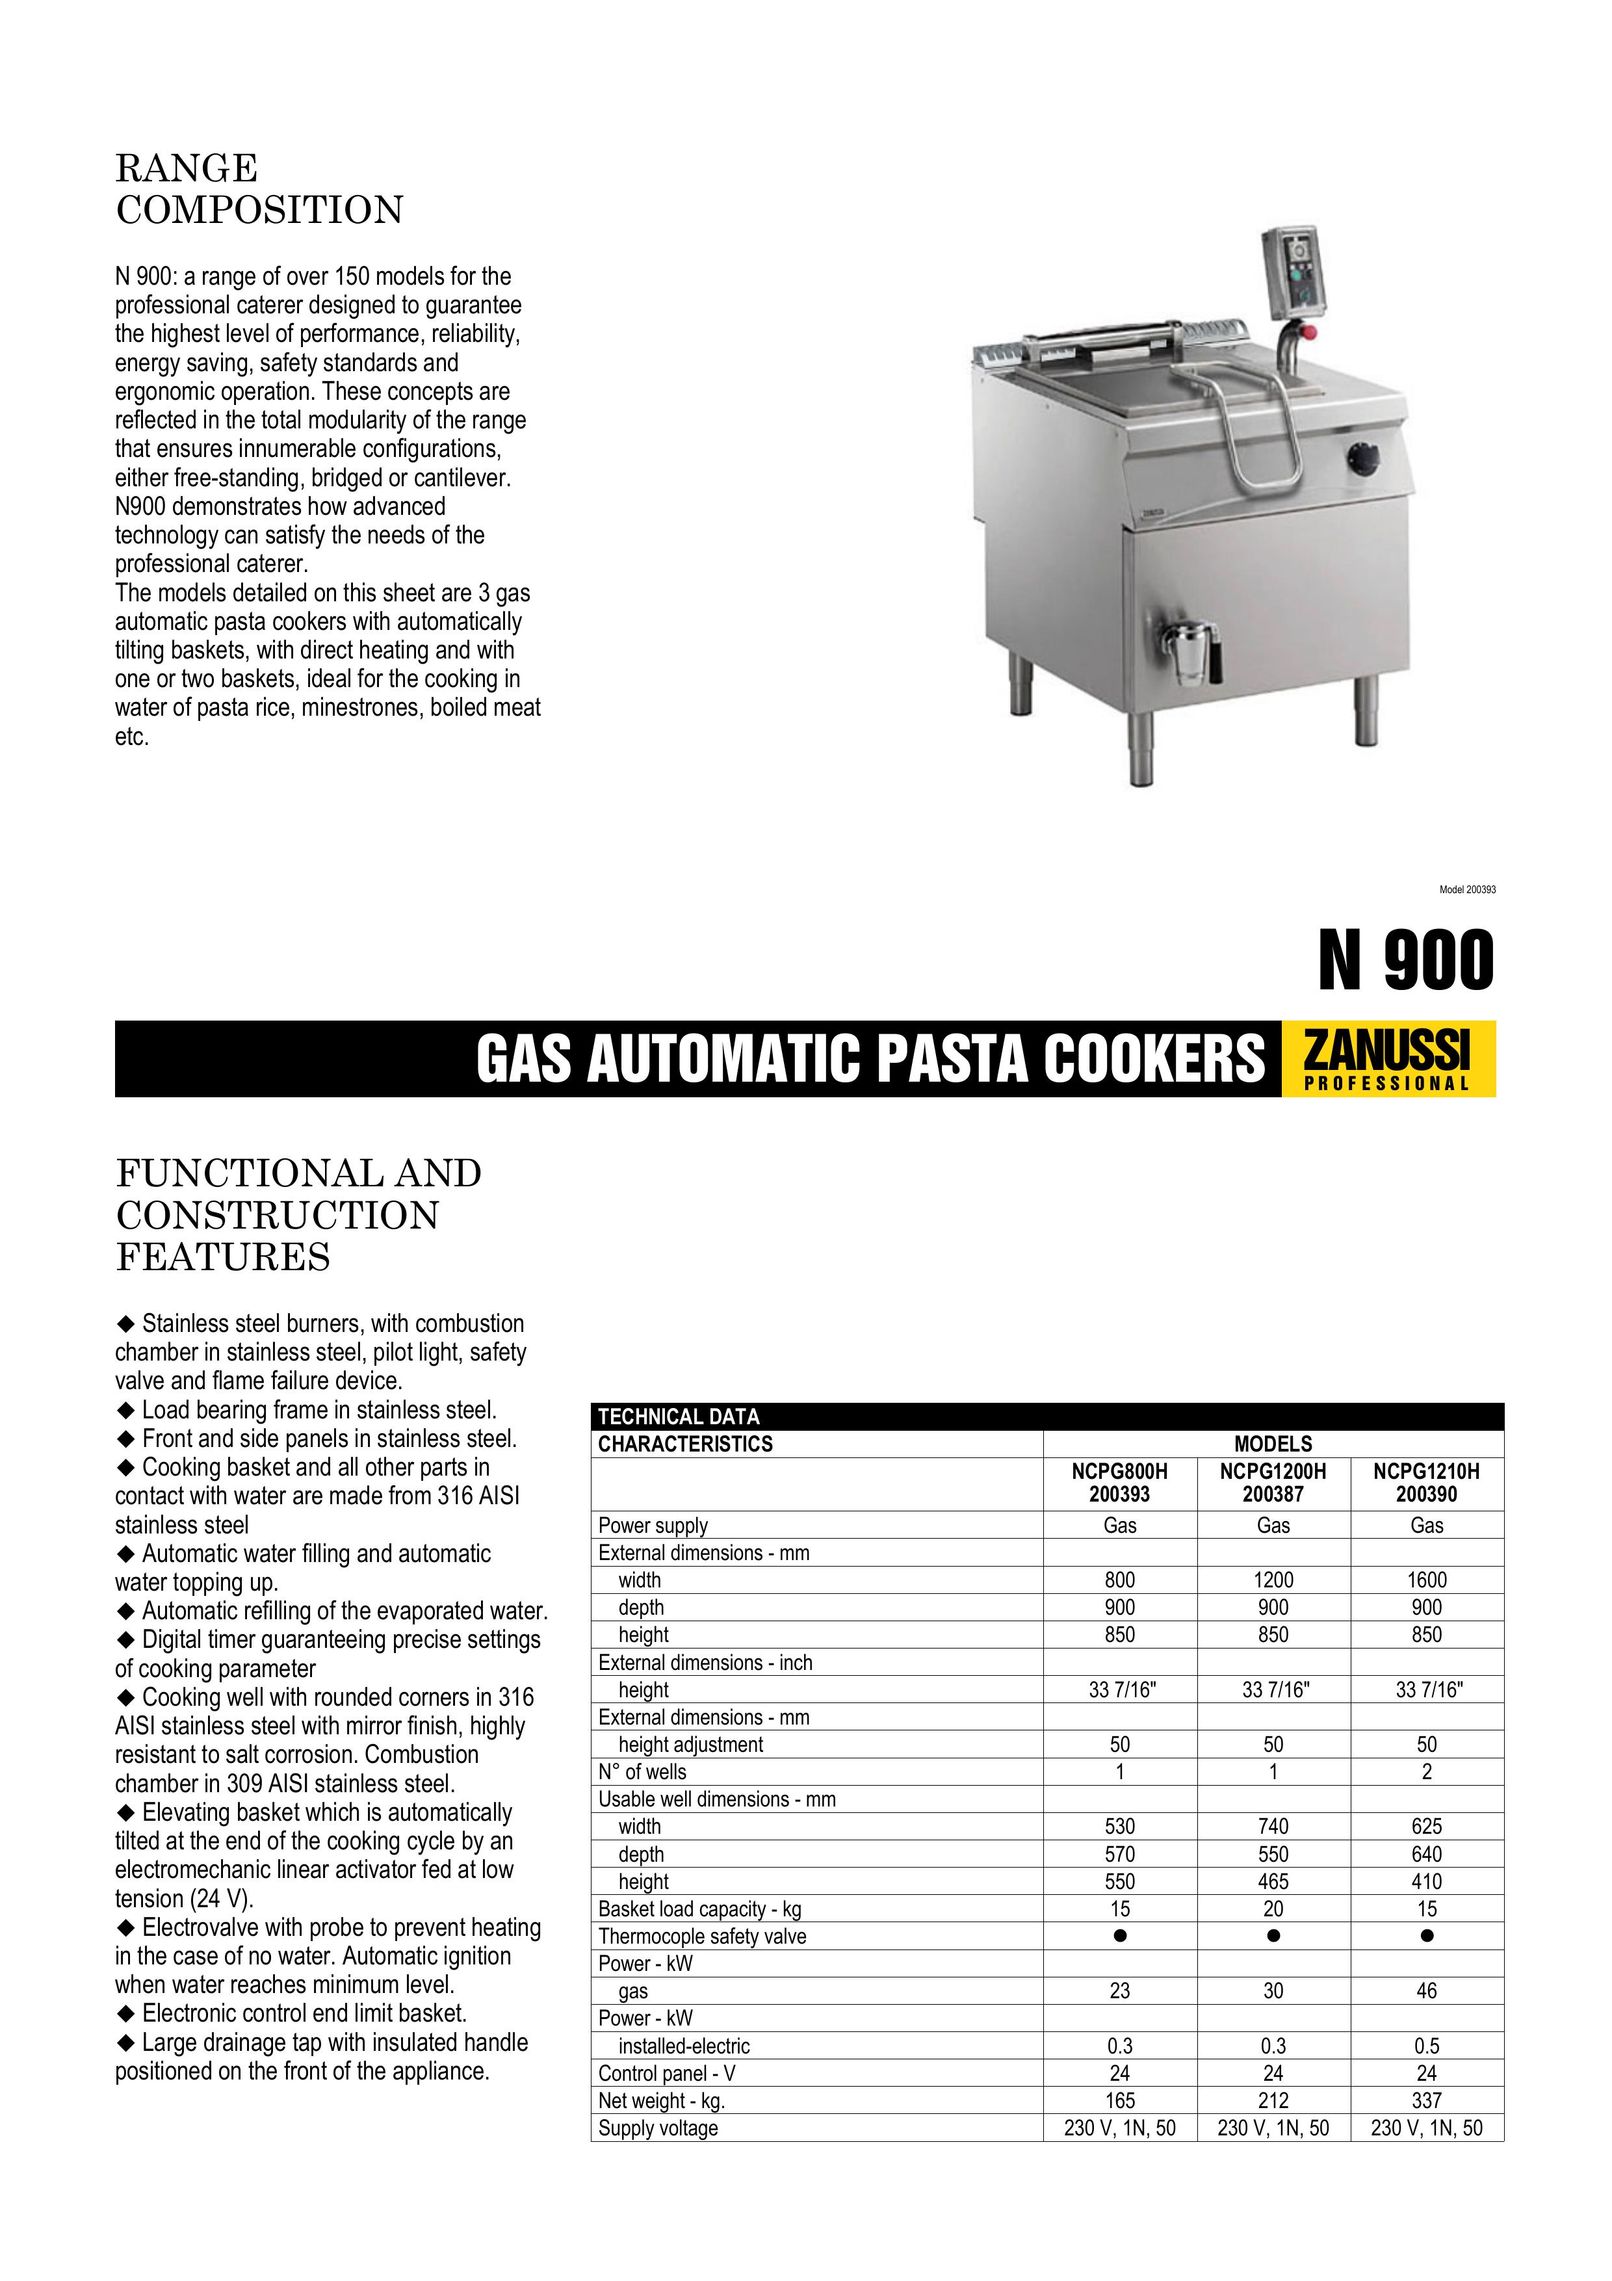 Zanussi NCPG1210H Pasta Maker User Manual